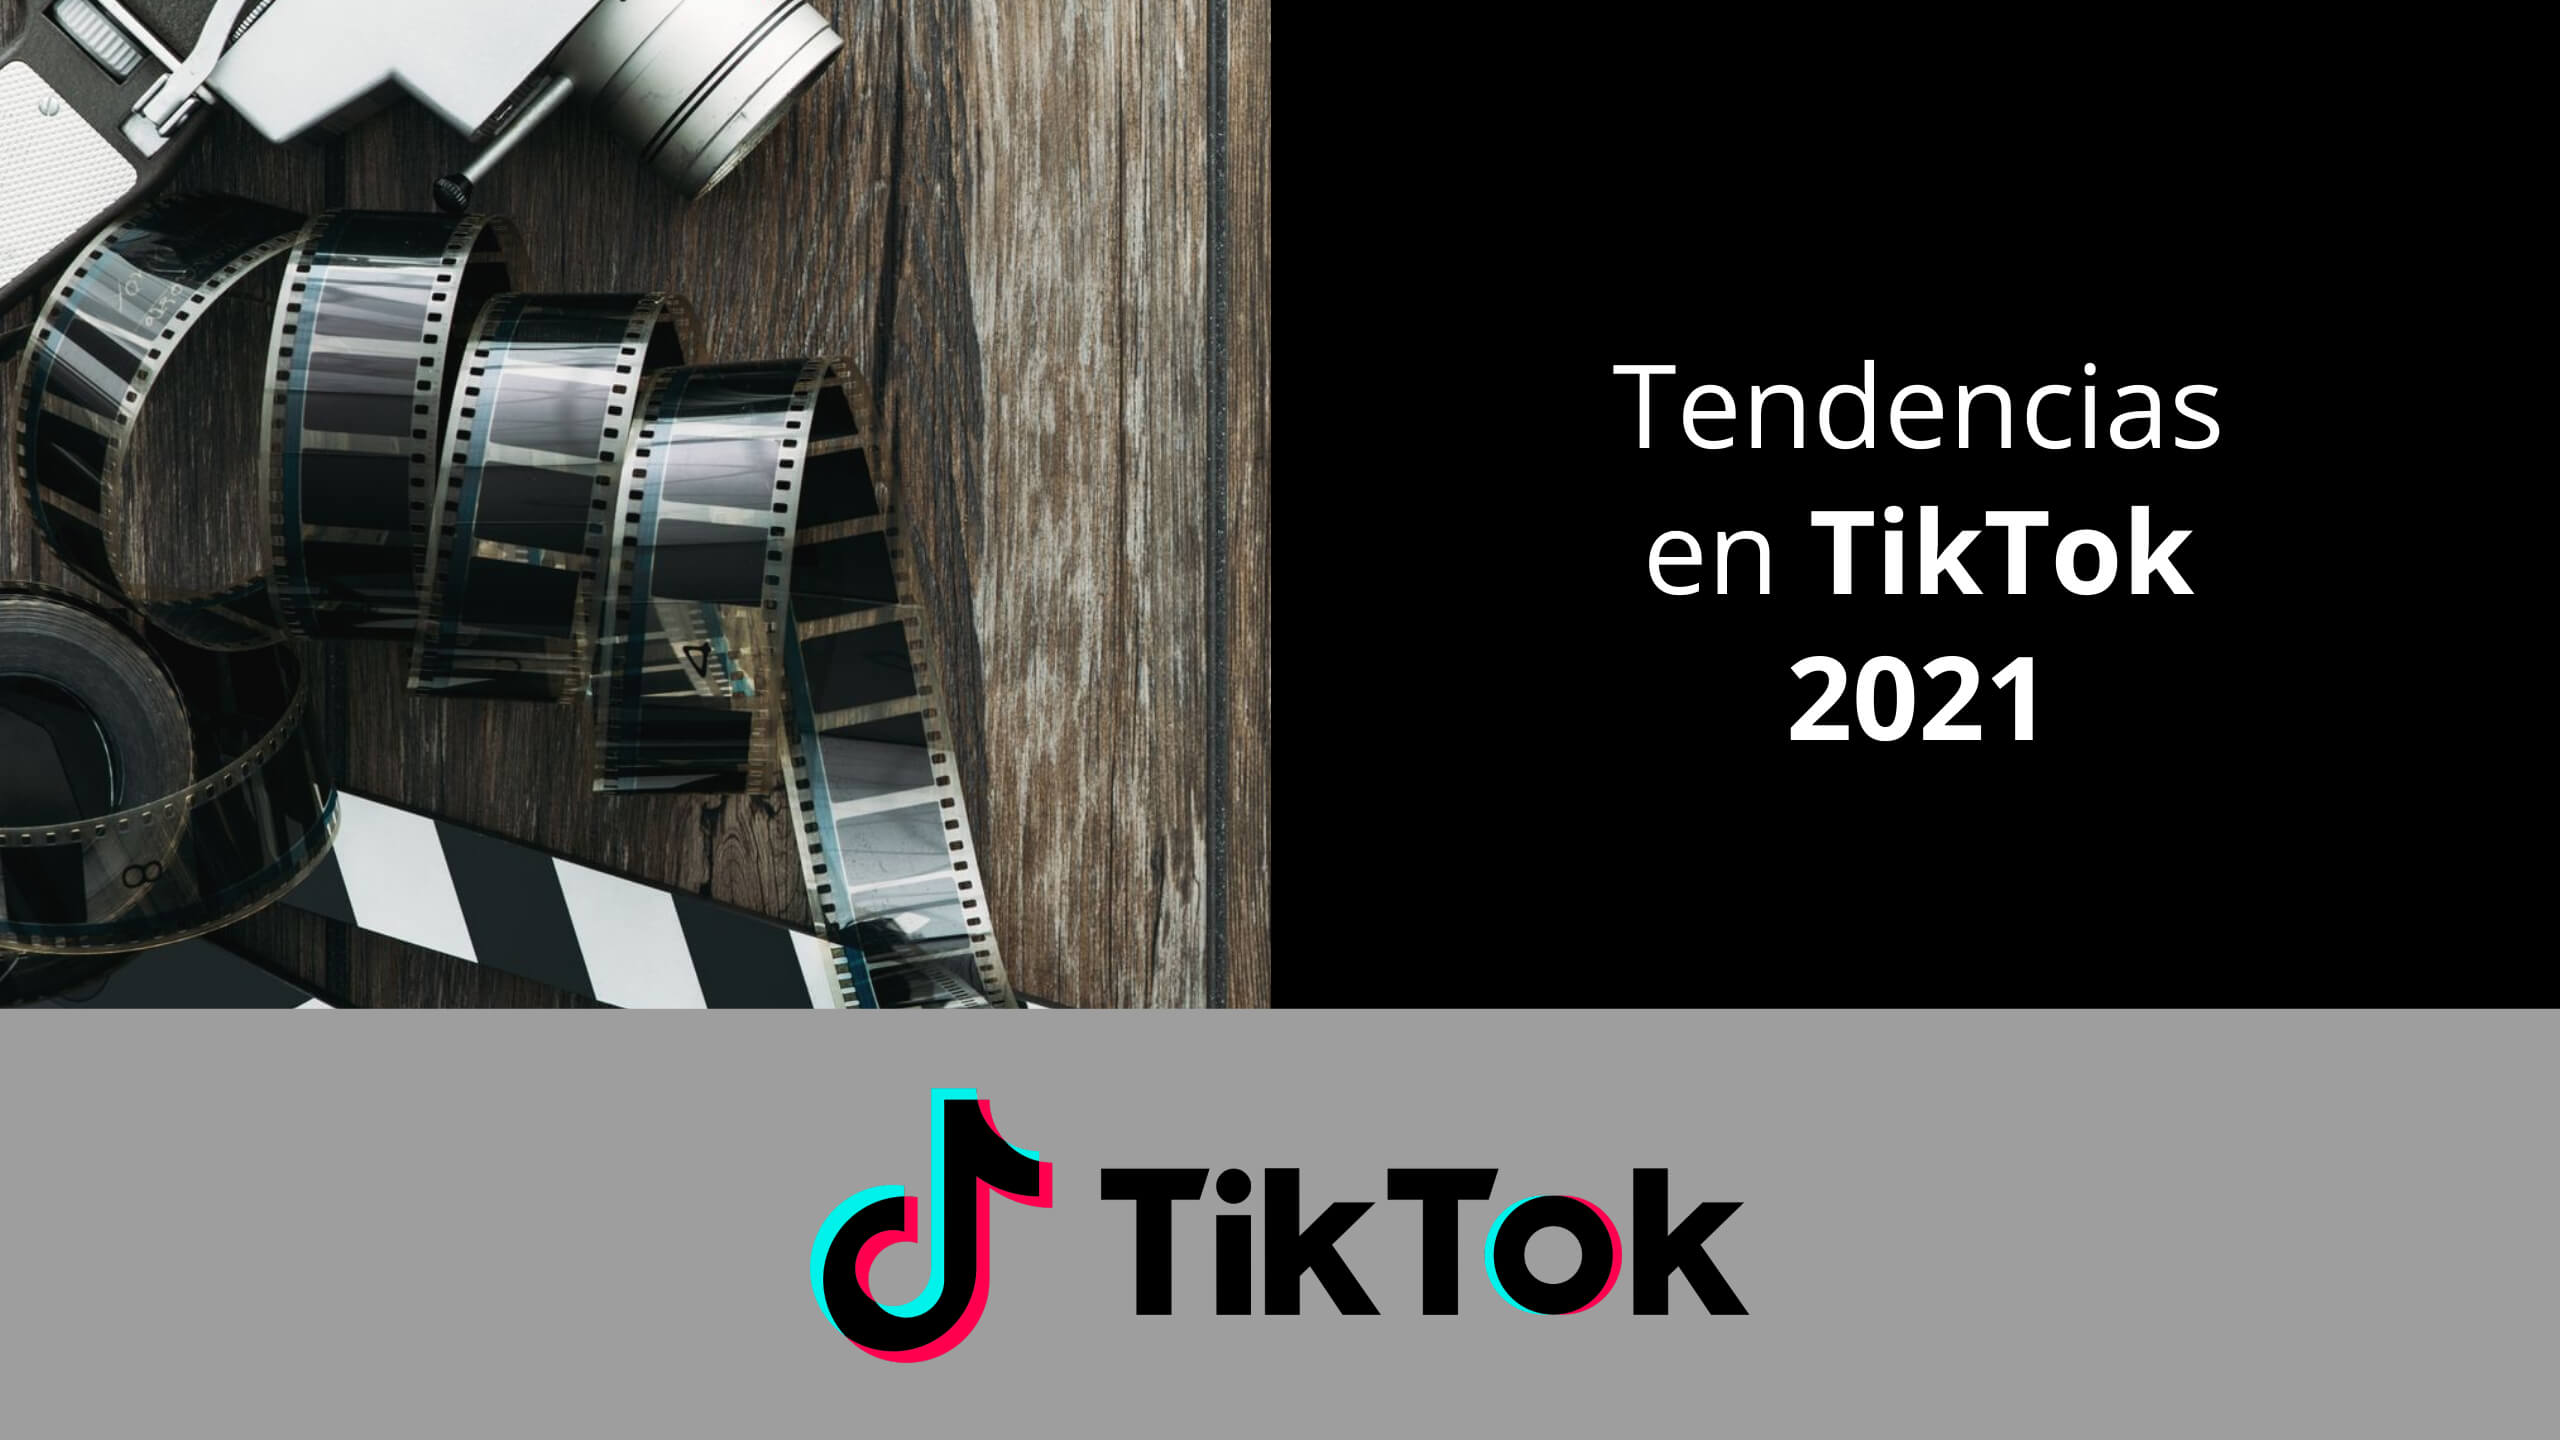 Tendencias en TikTok en 2021